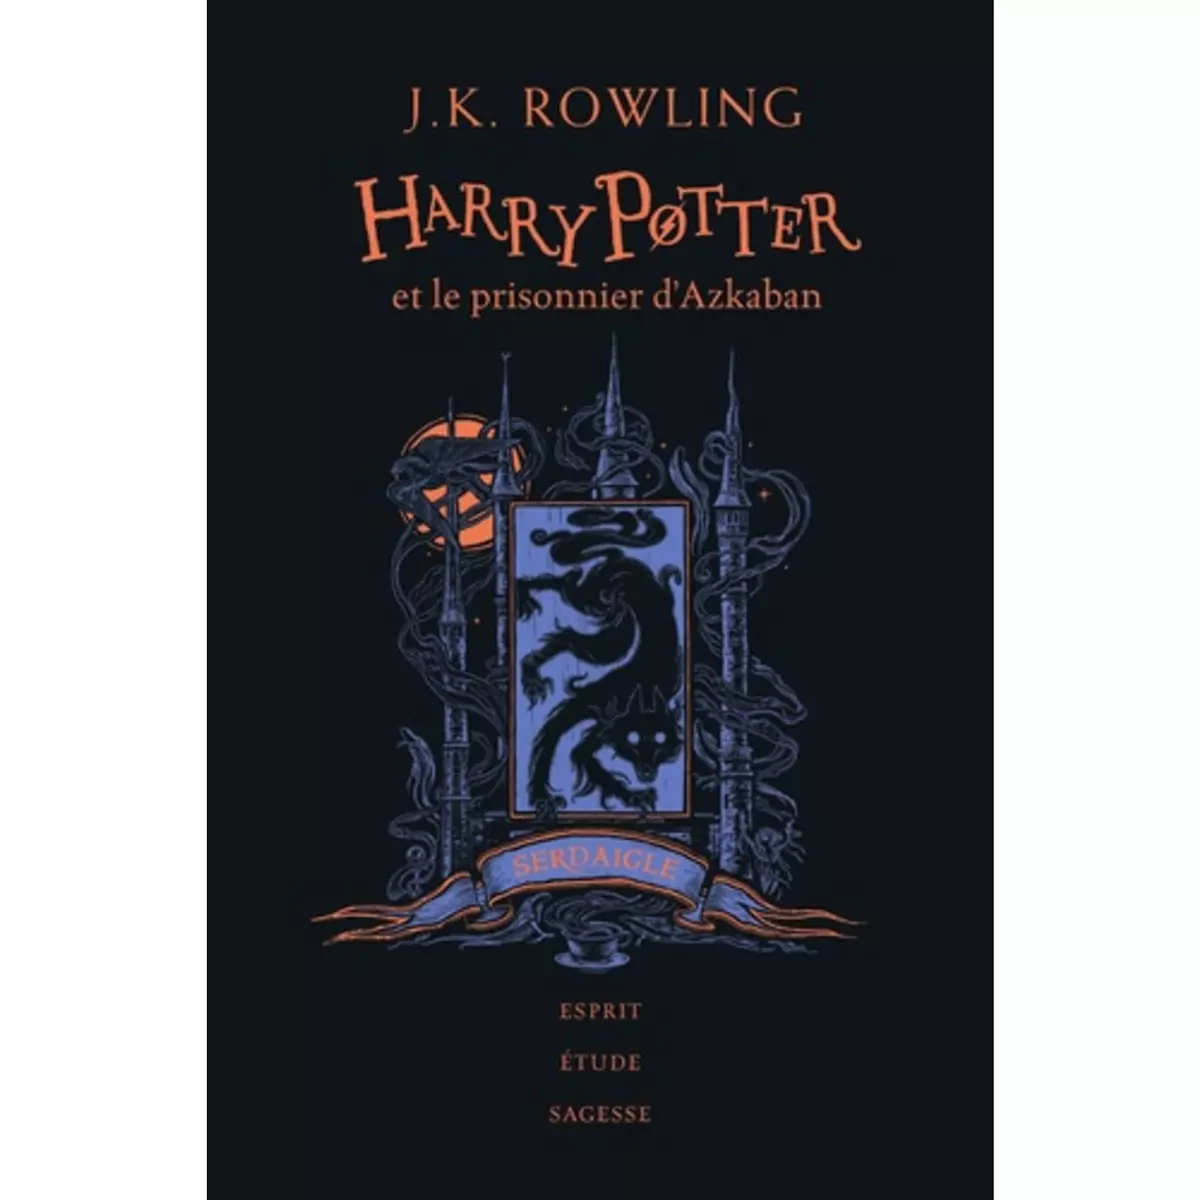  HARRY POTTER TOME 3 : HARRY POTTER ET LE PRISONNIER D'AZKABAN (SERDAIGLE). EDITION COLLECTOR, Rowling J.K.